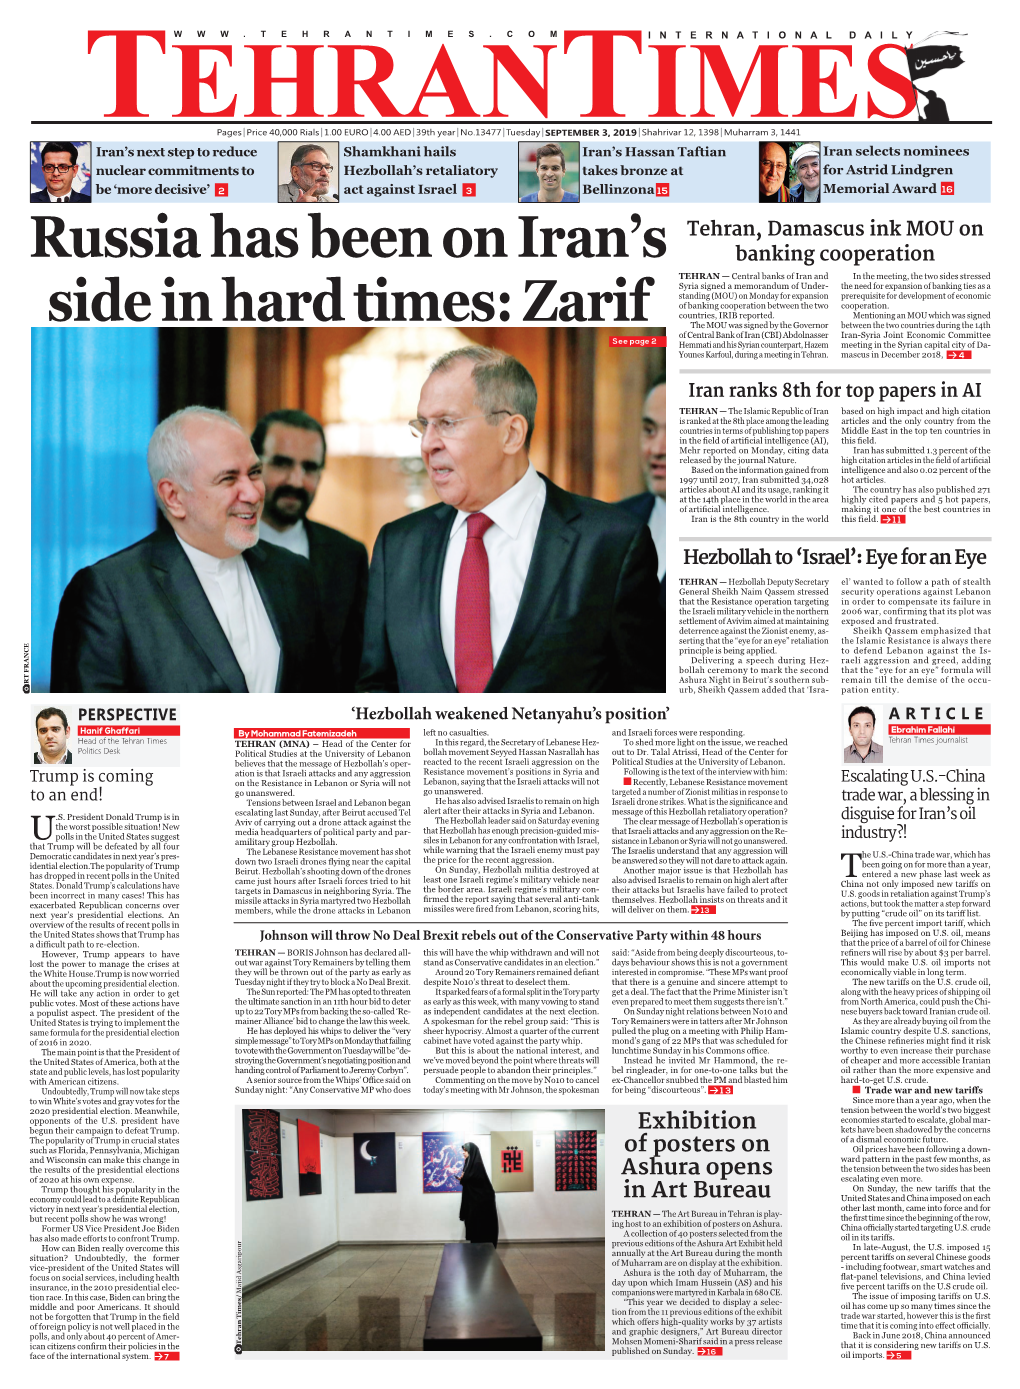 Russia Has Been on Iran's Side in Hard Times: Zarif